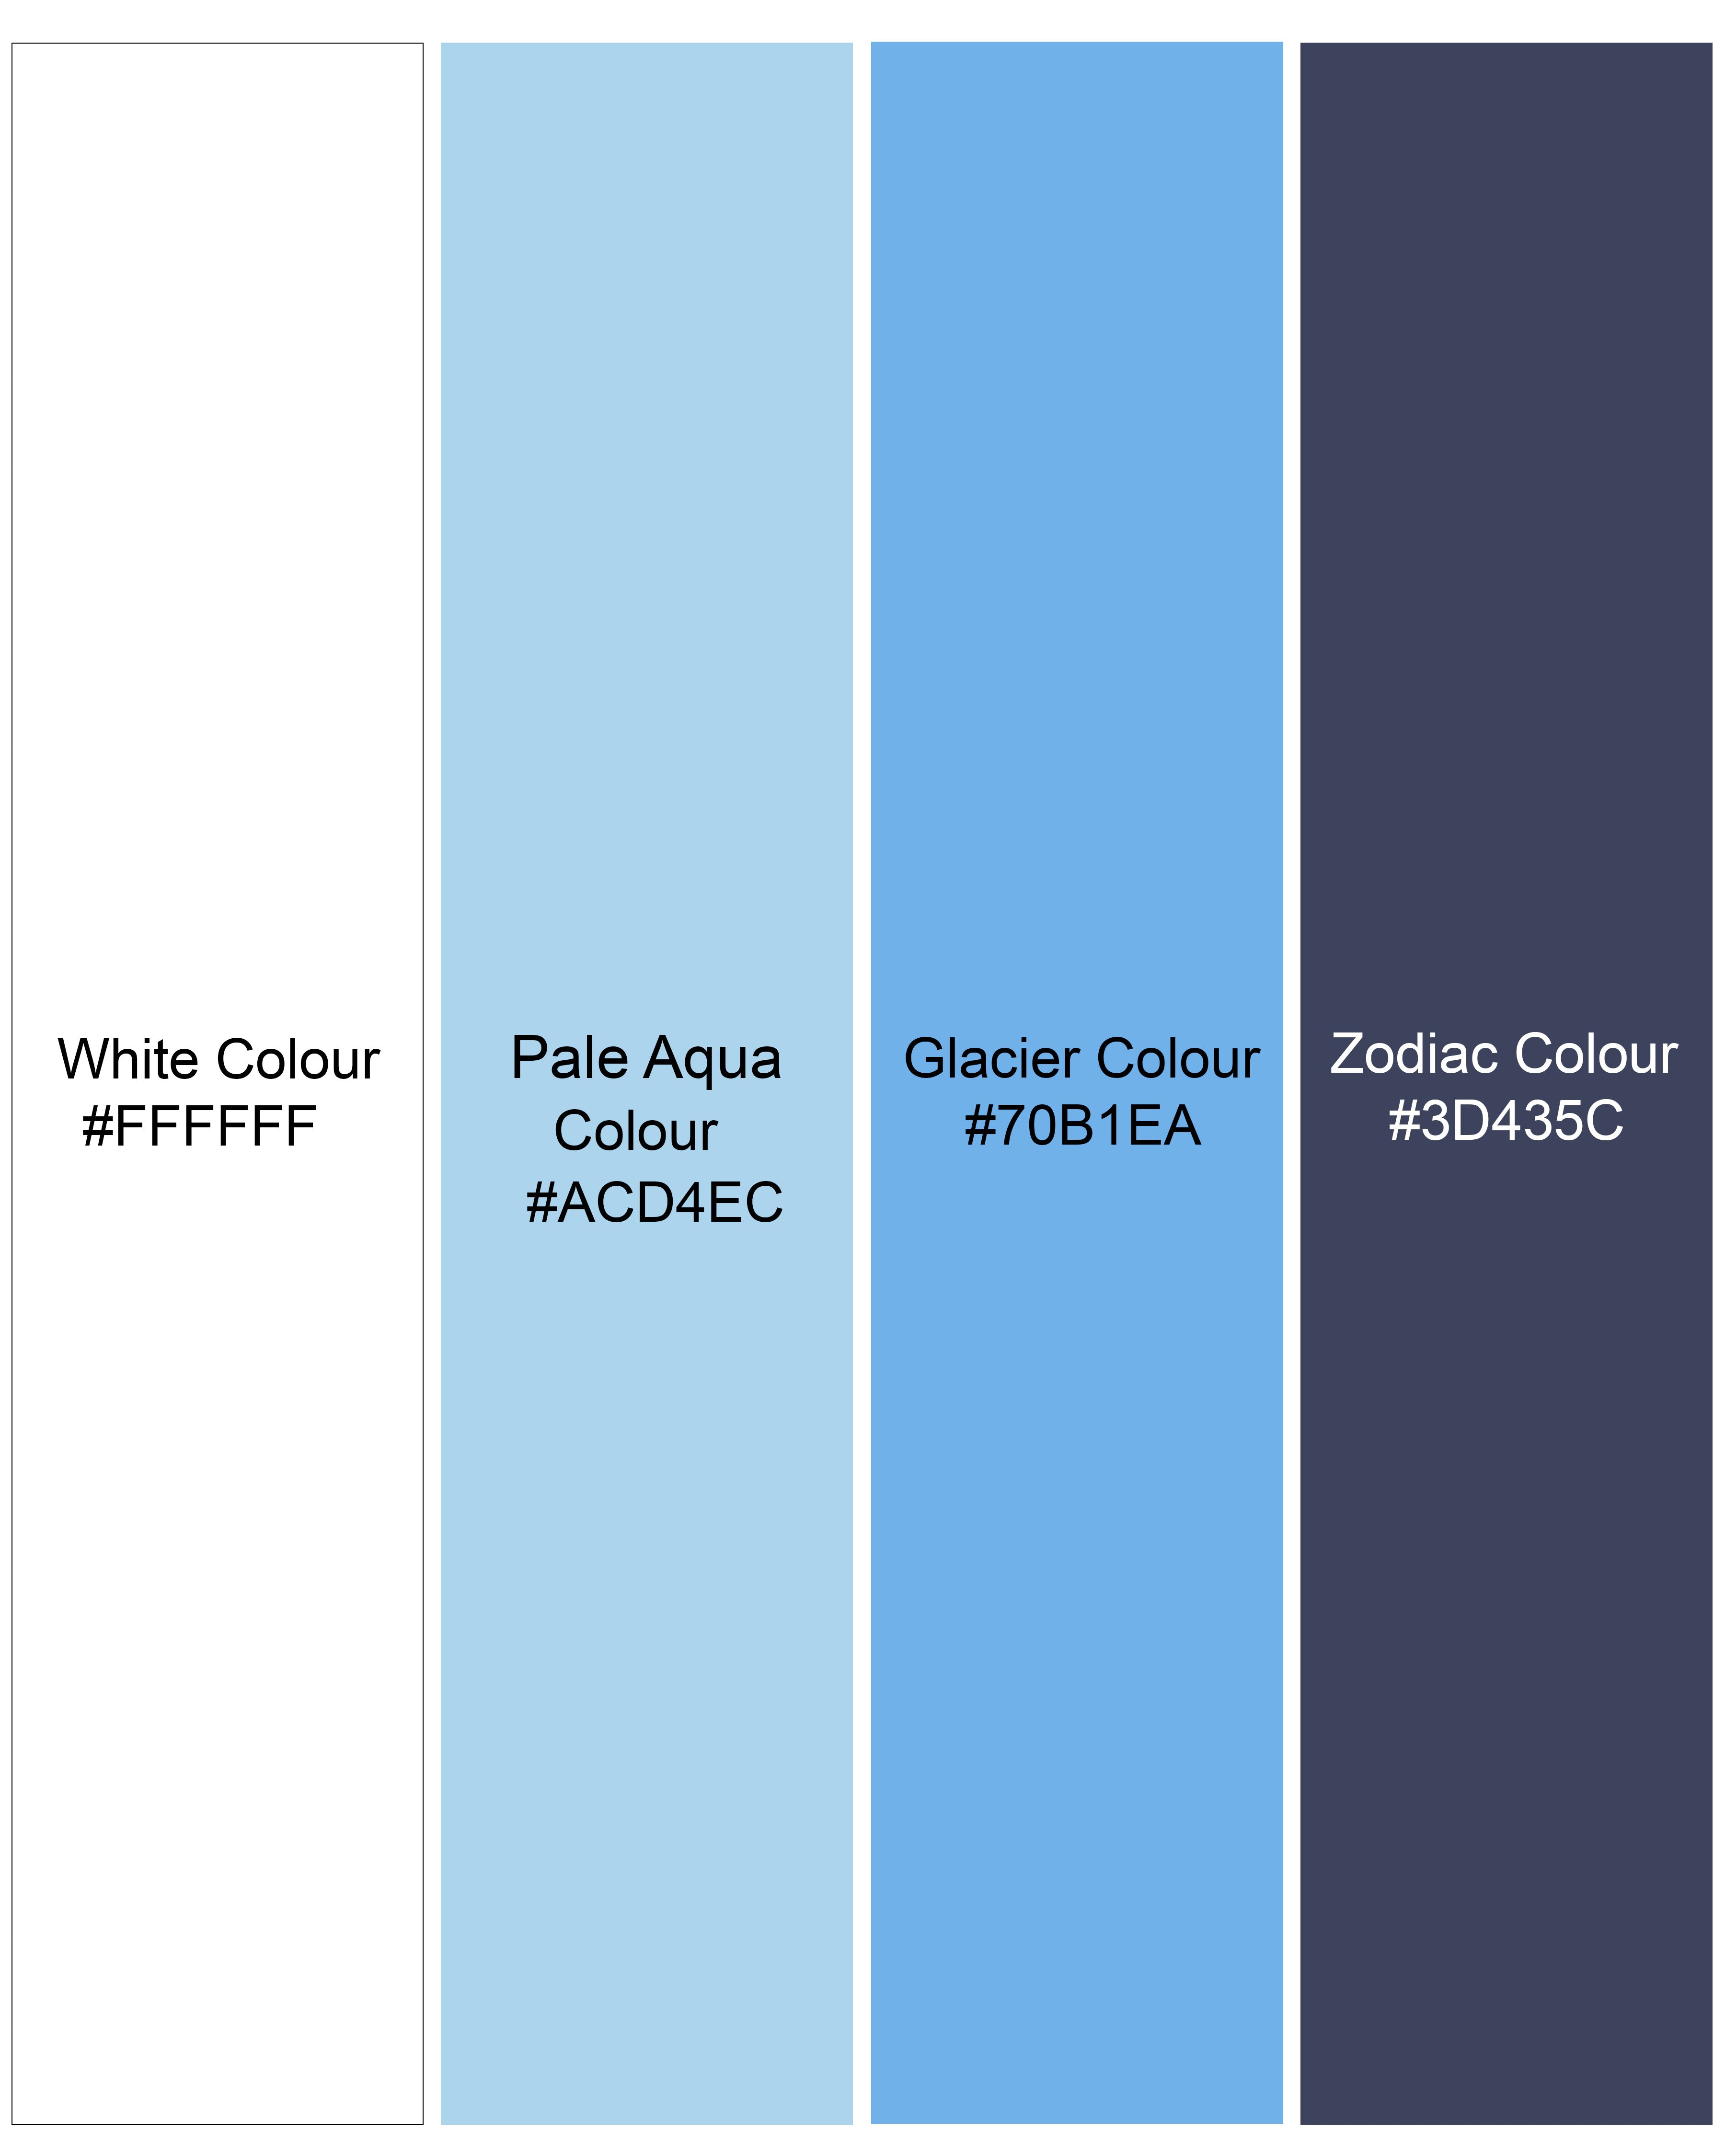 Bright White with Pale Aqua Blue Multicolour Striped Premium Cotton Shirt 8452-GR-38,8452-GR-H-38,8452-GR-39,8452-GR-H-39,8452-GR-40,8452-GR-H-40,8452-GR-42,8452-GR-H-42,8452-GR-44,8452-GR-H-44,8452-GR-46,8452-GR-H-46,8452-GR-48,8452-GR-H-48,8452-GR-50,8452-GR-H-50,8452-GR-52,8452-GR-H-52